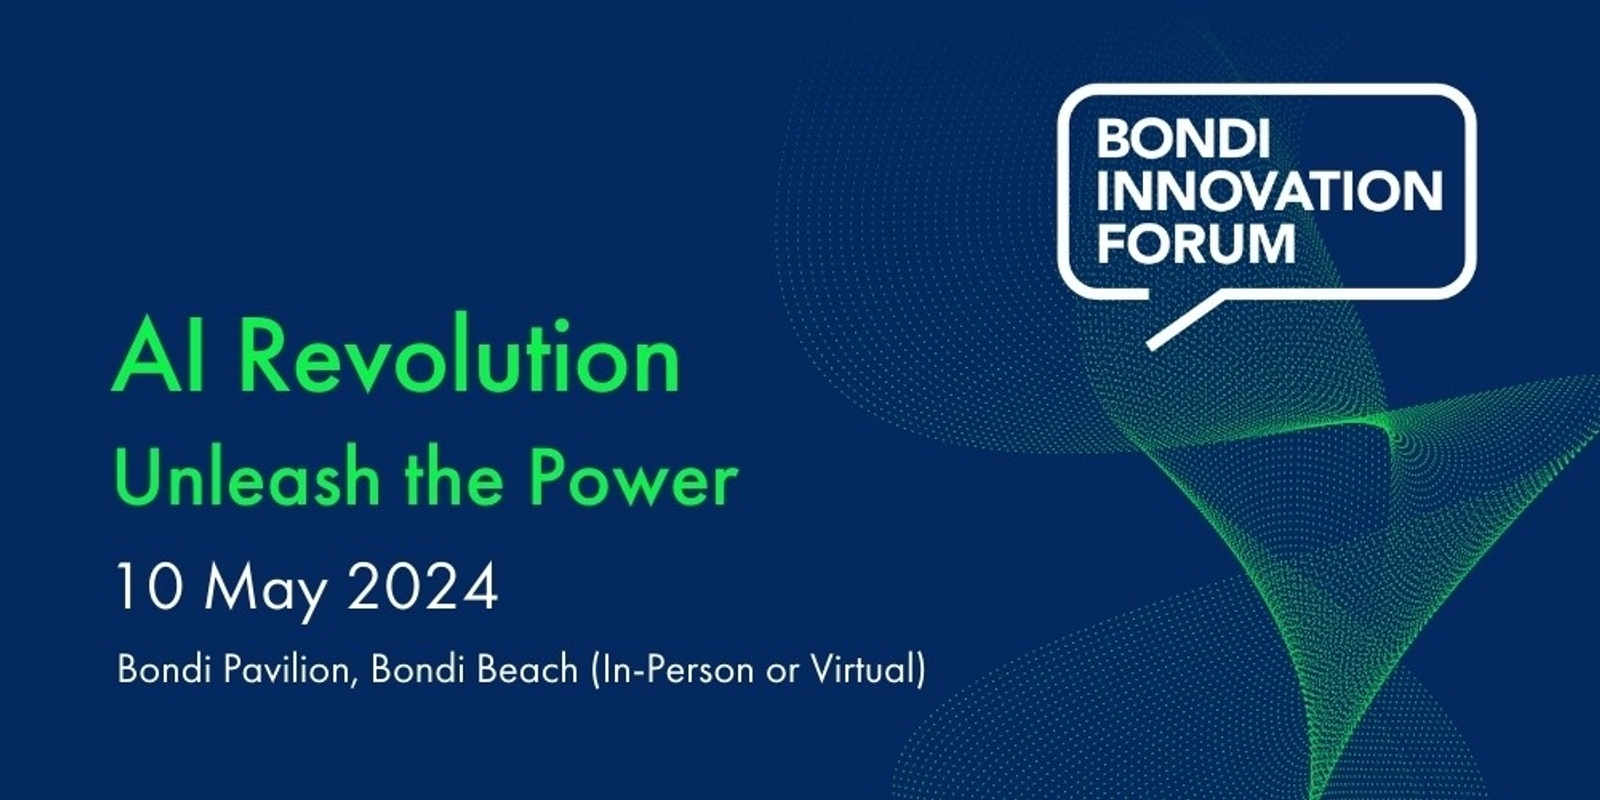 Banner image for Bondi Innovation Forum 2024